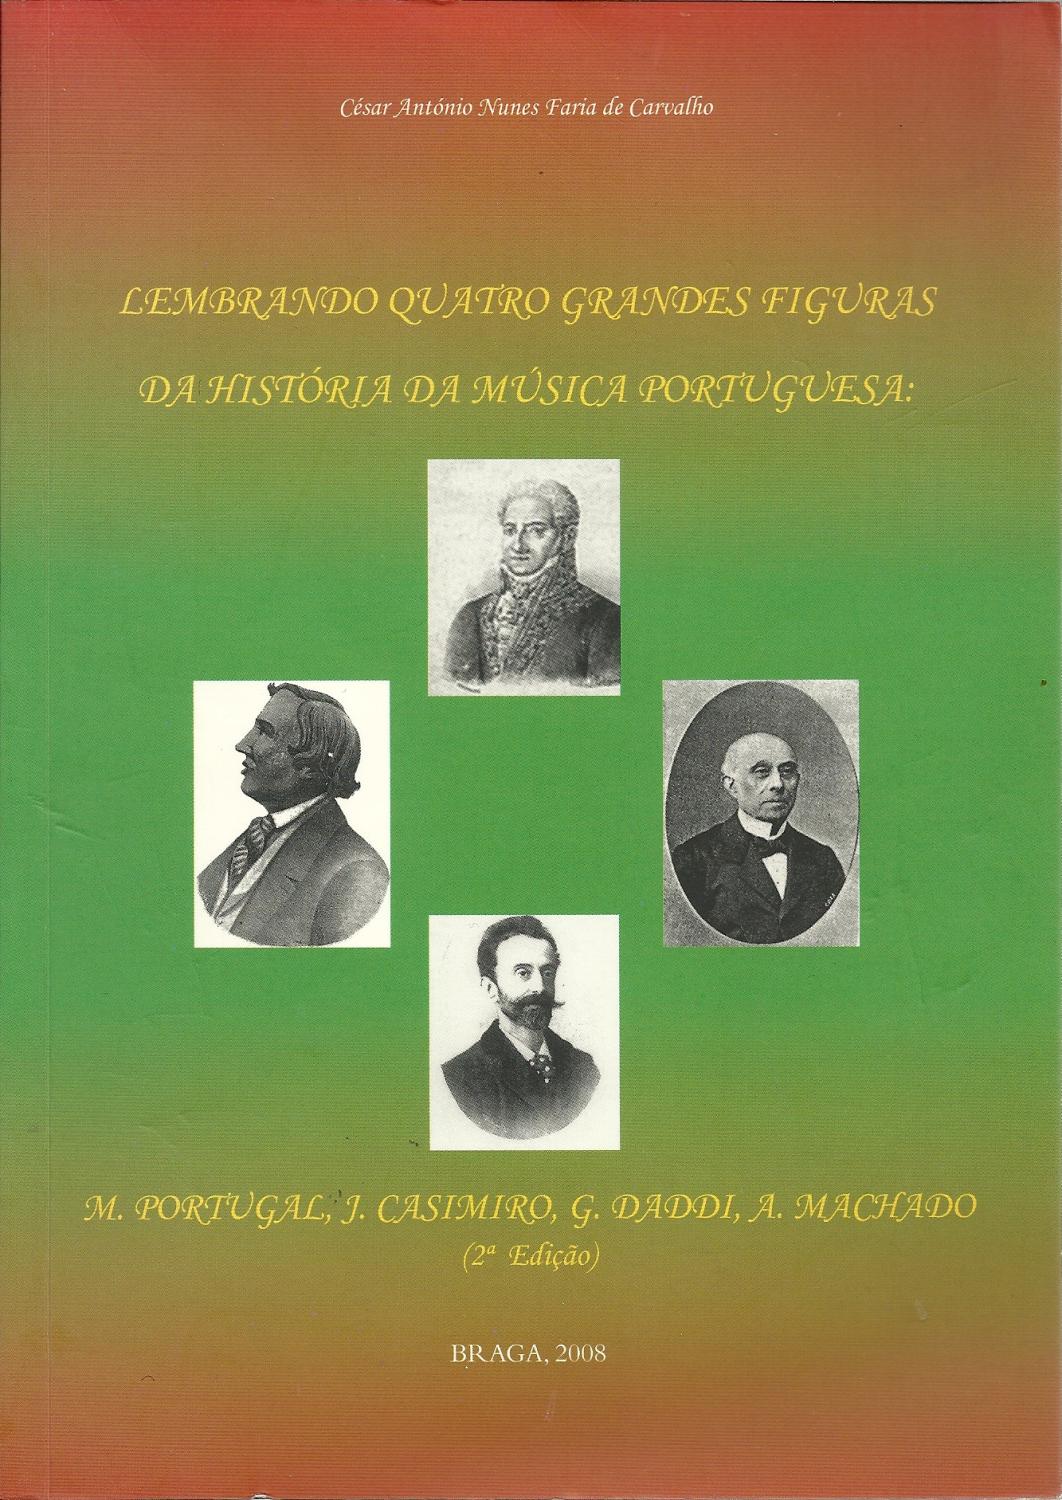 LEMBRANDO QUATRO GRANDES FIGURAS DA HISTÓRIA DA MÚSICA PORTUGUESA: M. Portugal, J. Casimiro, G. Daddi, A. Machado - CARVALHO, César António Nunes Faria de